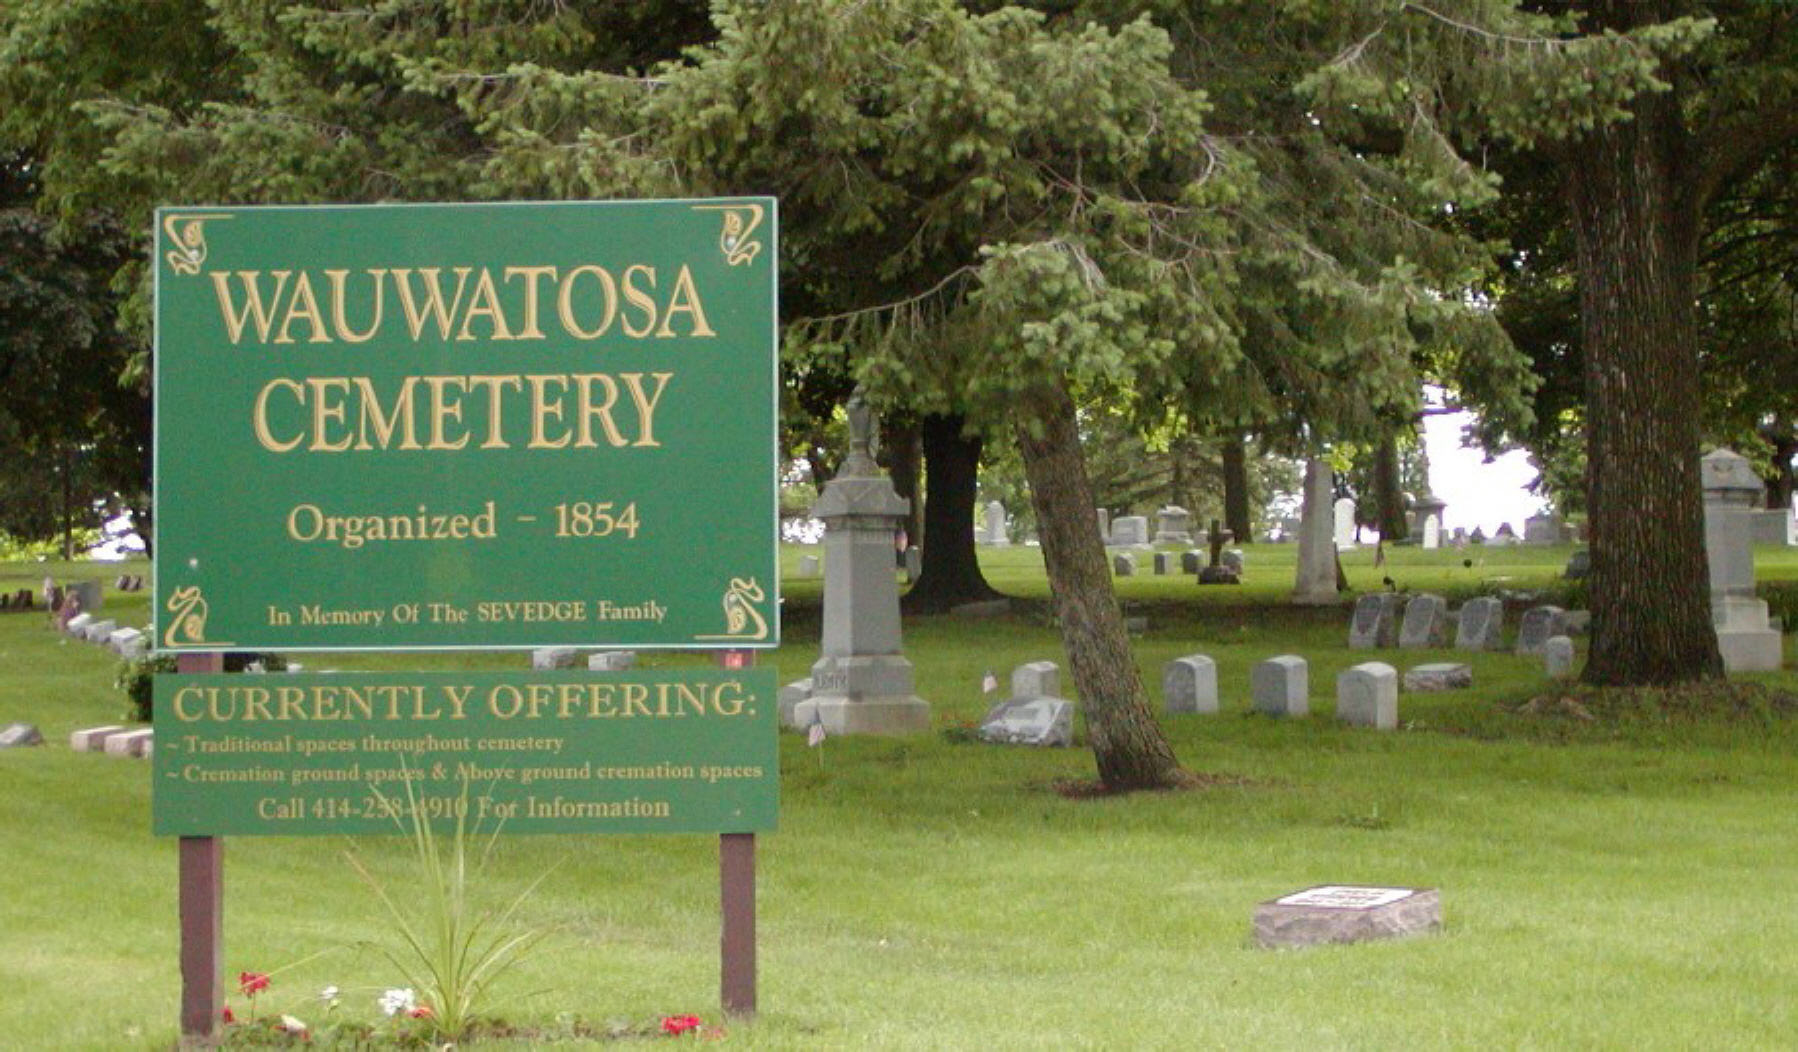 Wauwatosa Cemetery